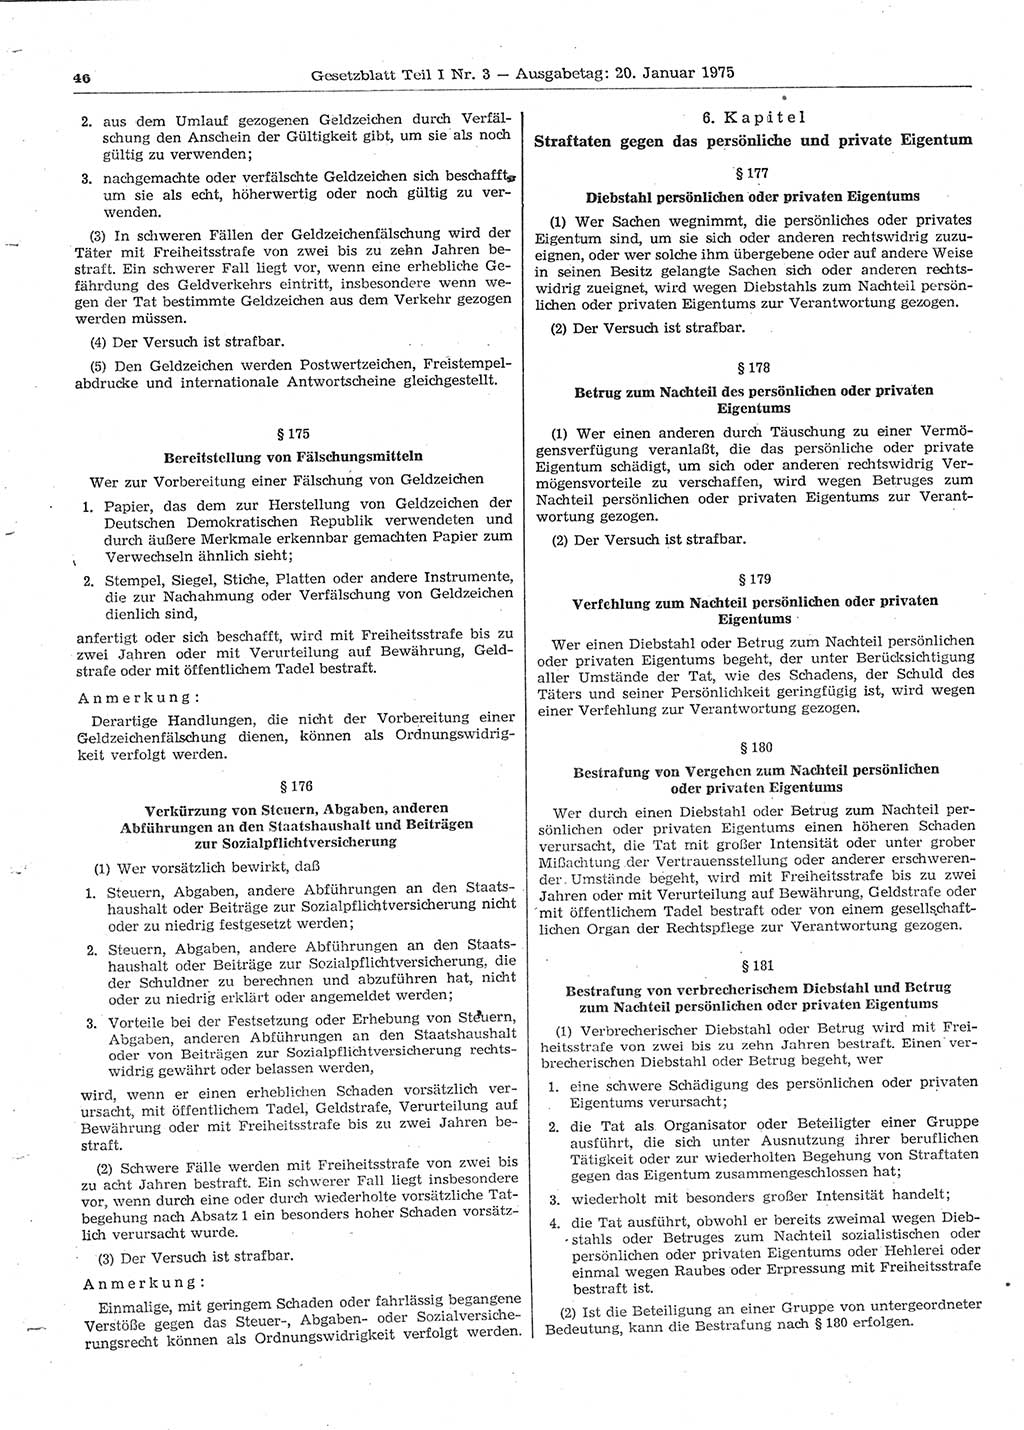 Gesetzblatt (GBl.) der Deutschen Demokratischen Republik (DDR) Teil Ⅰ 1975, Seite 46 (GBl. DDR Ⅰ 1975, S. 46)